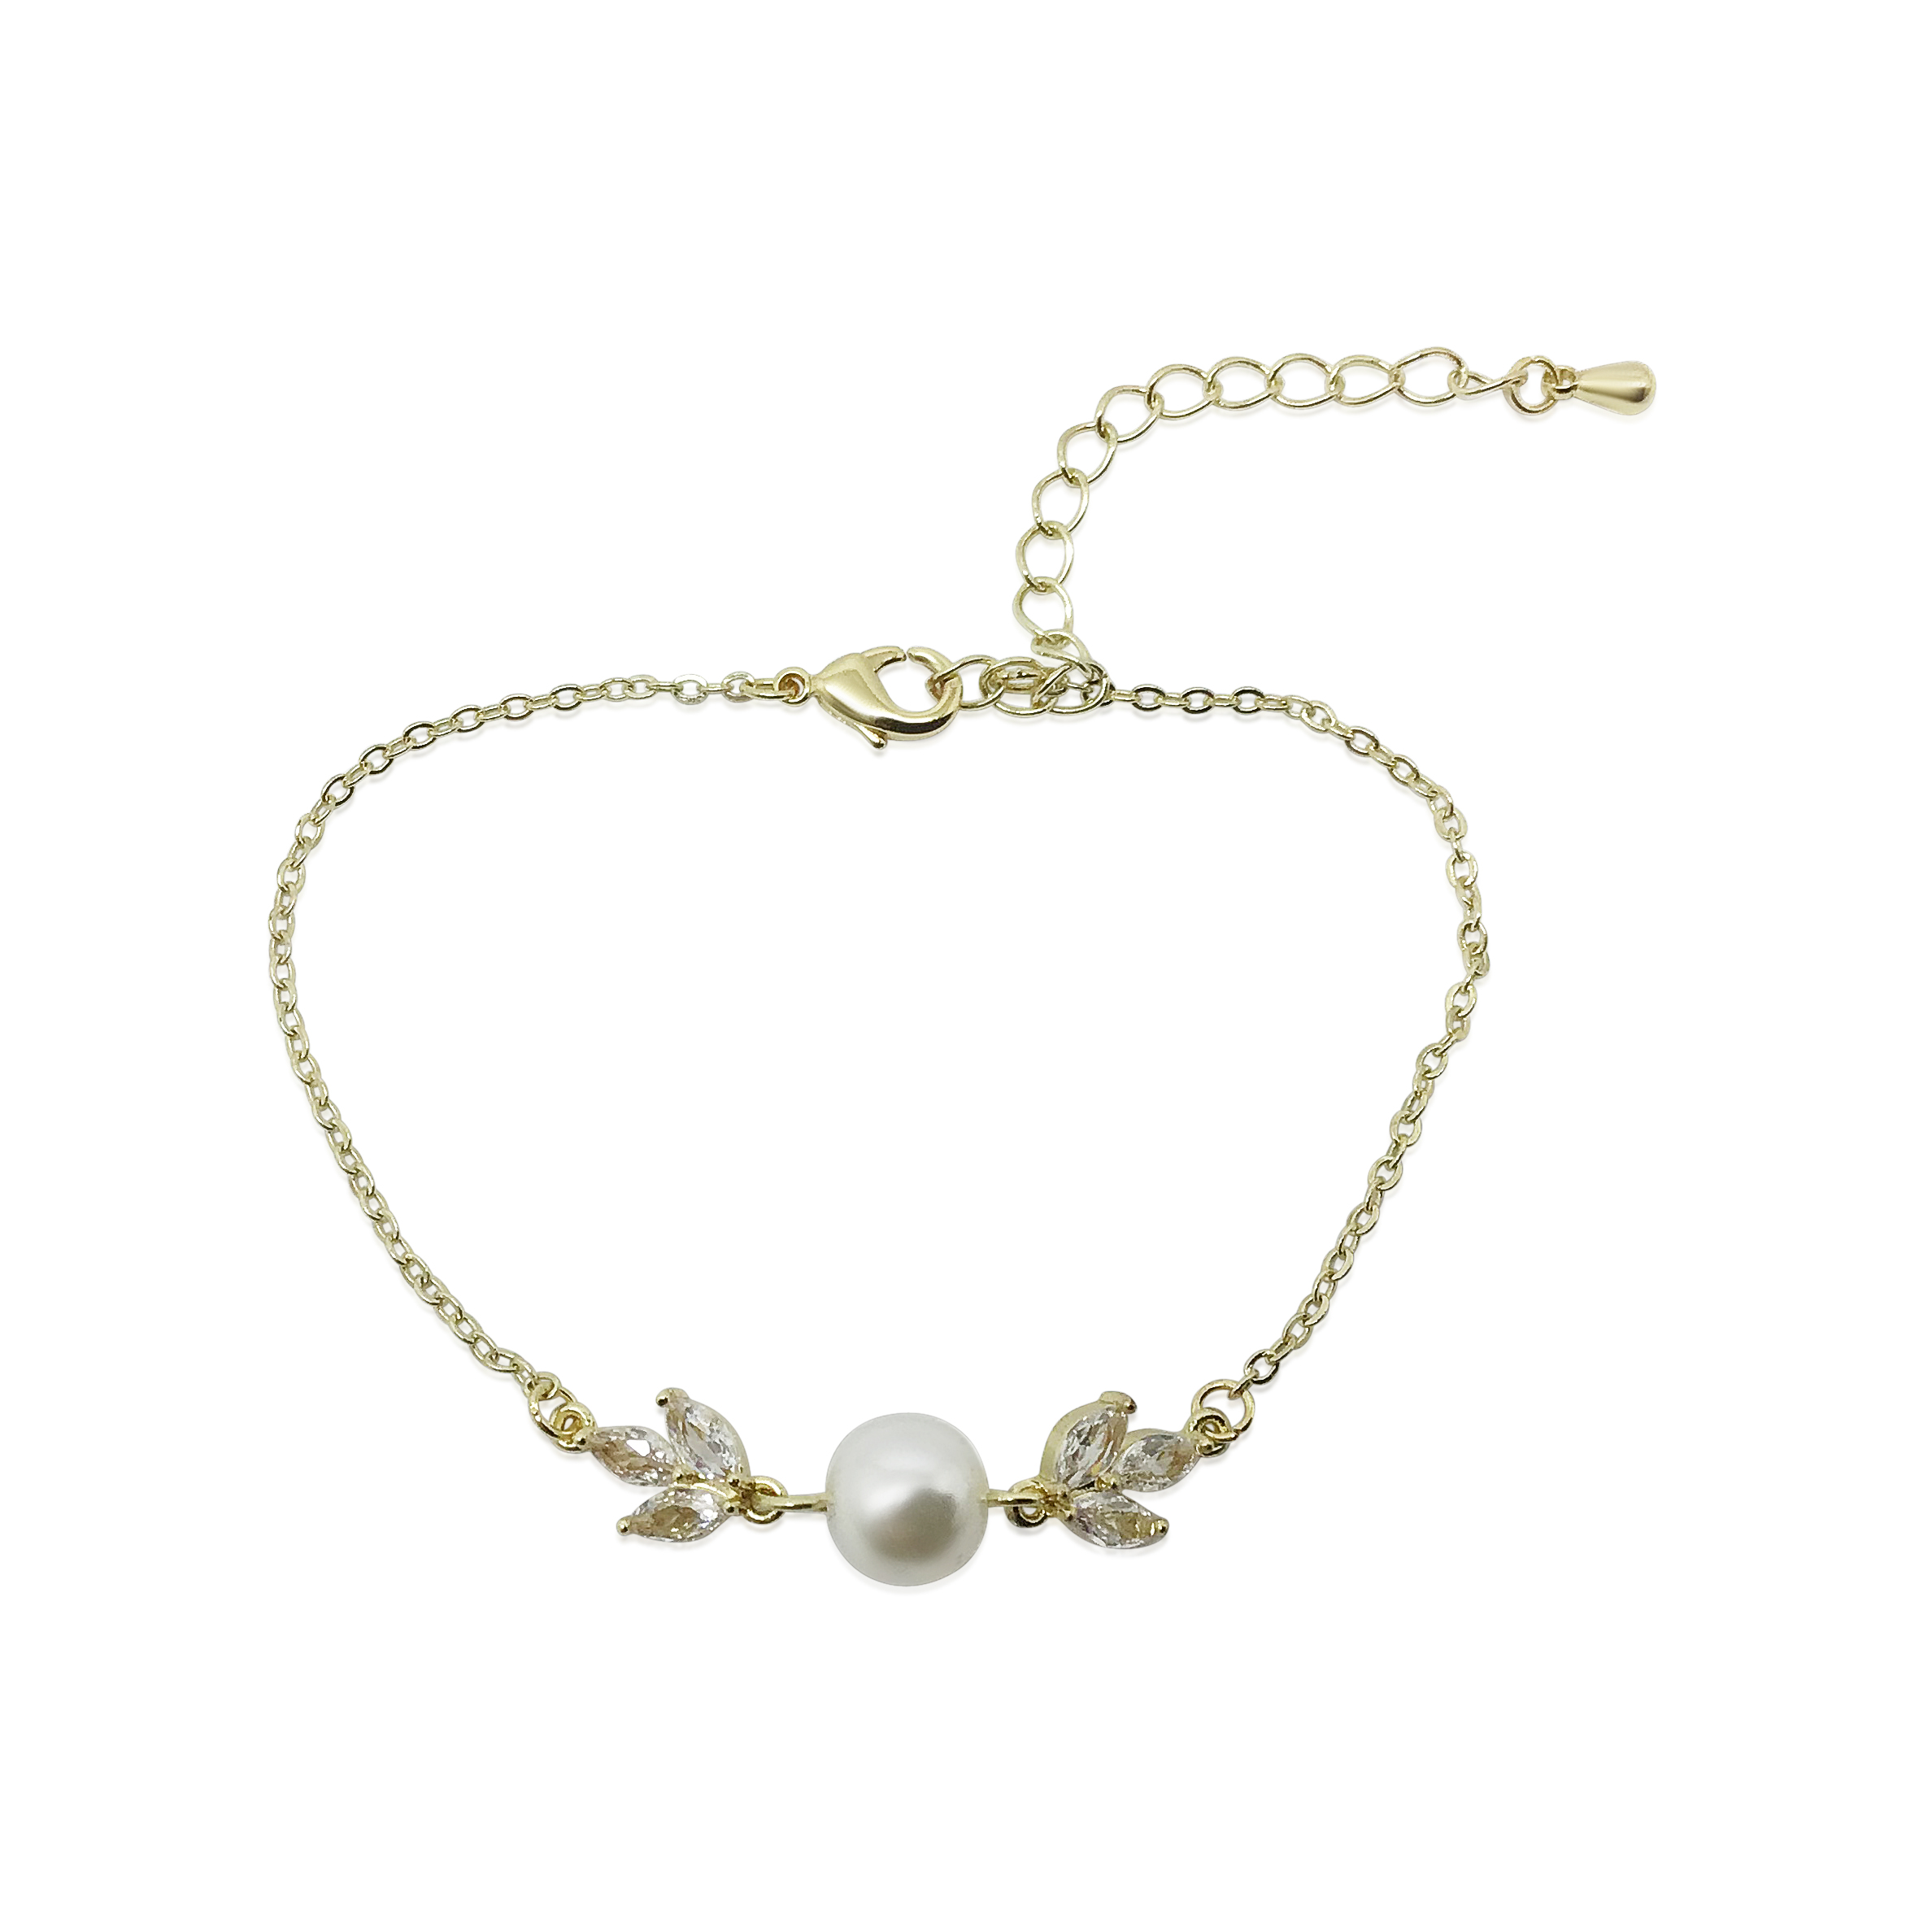 Pearl Bracelet Wedding|Carly|Jeanette Maree|Shop Online